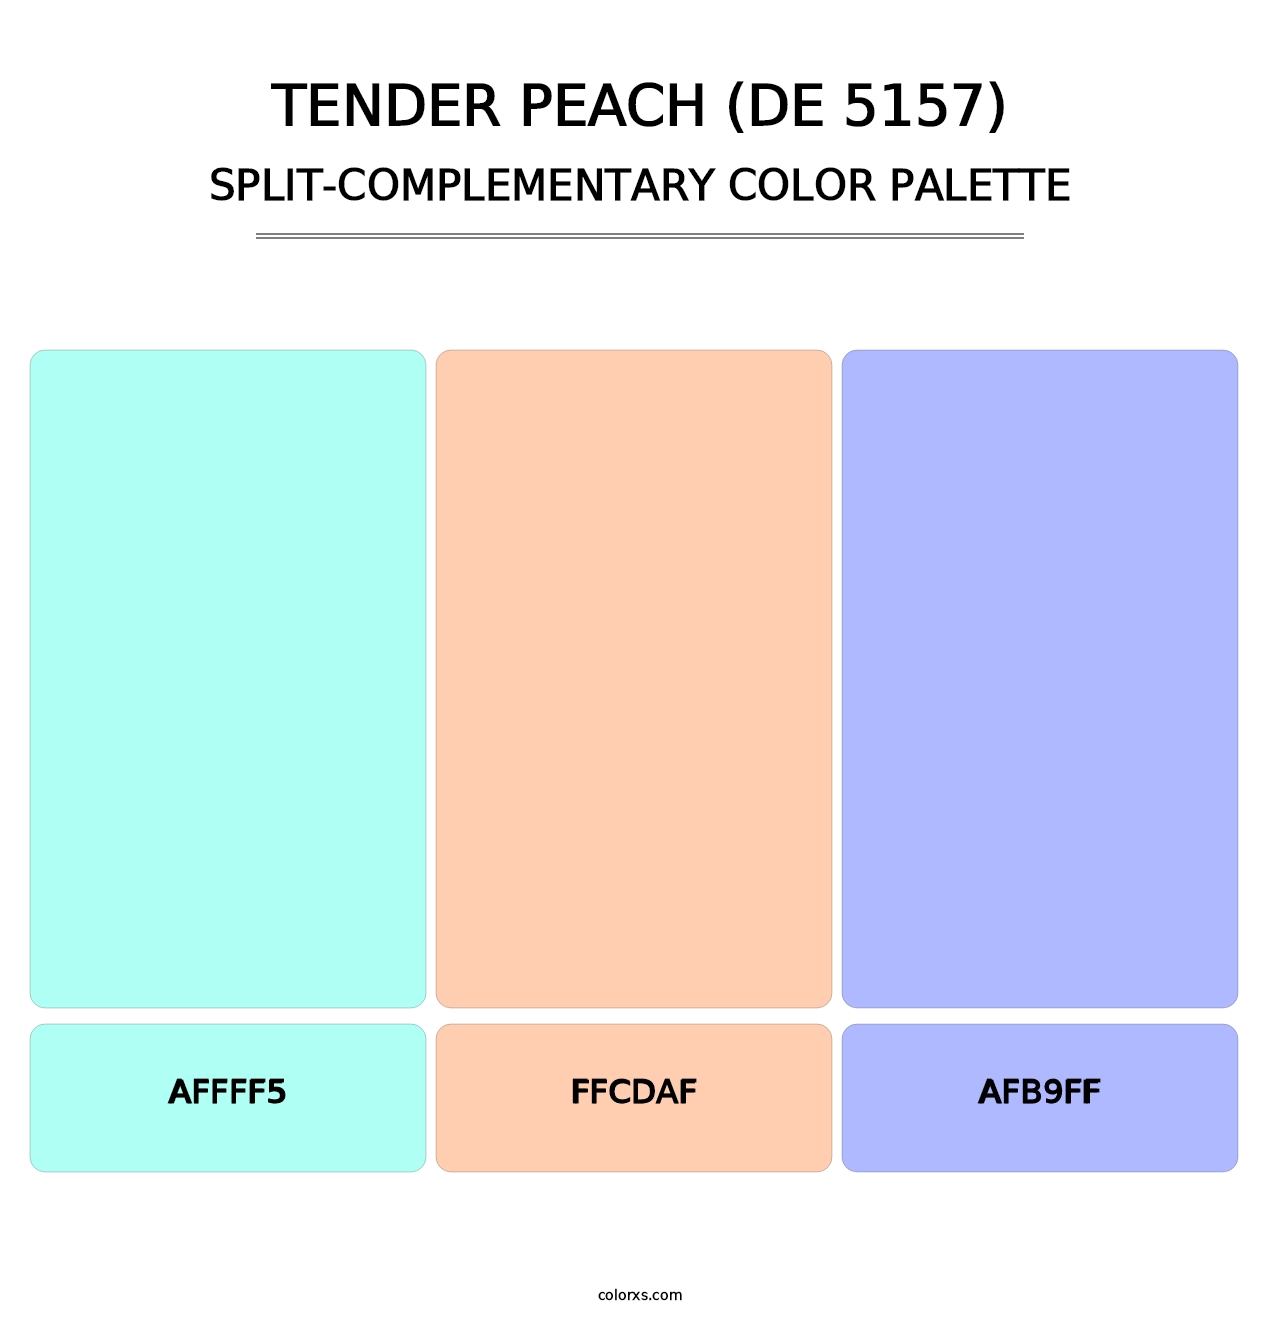 Tender Peach (DE 5157) - Split-Complementary Color Palette